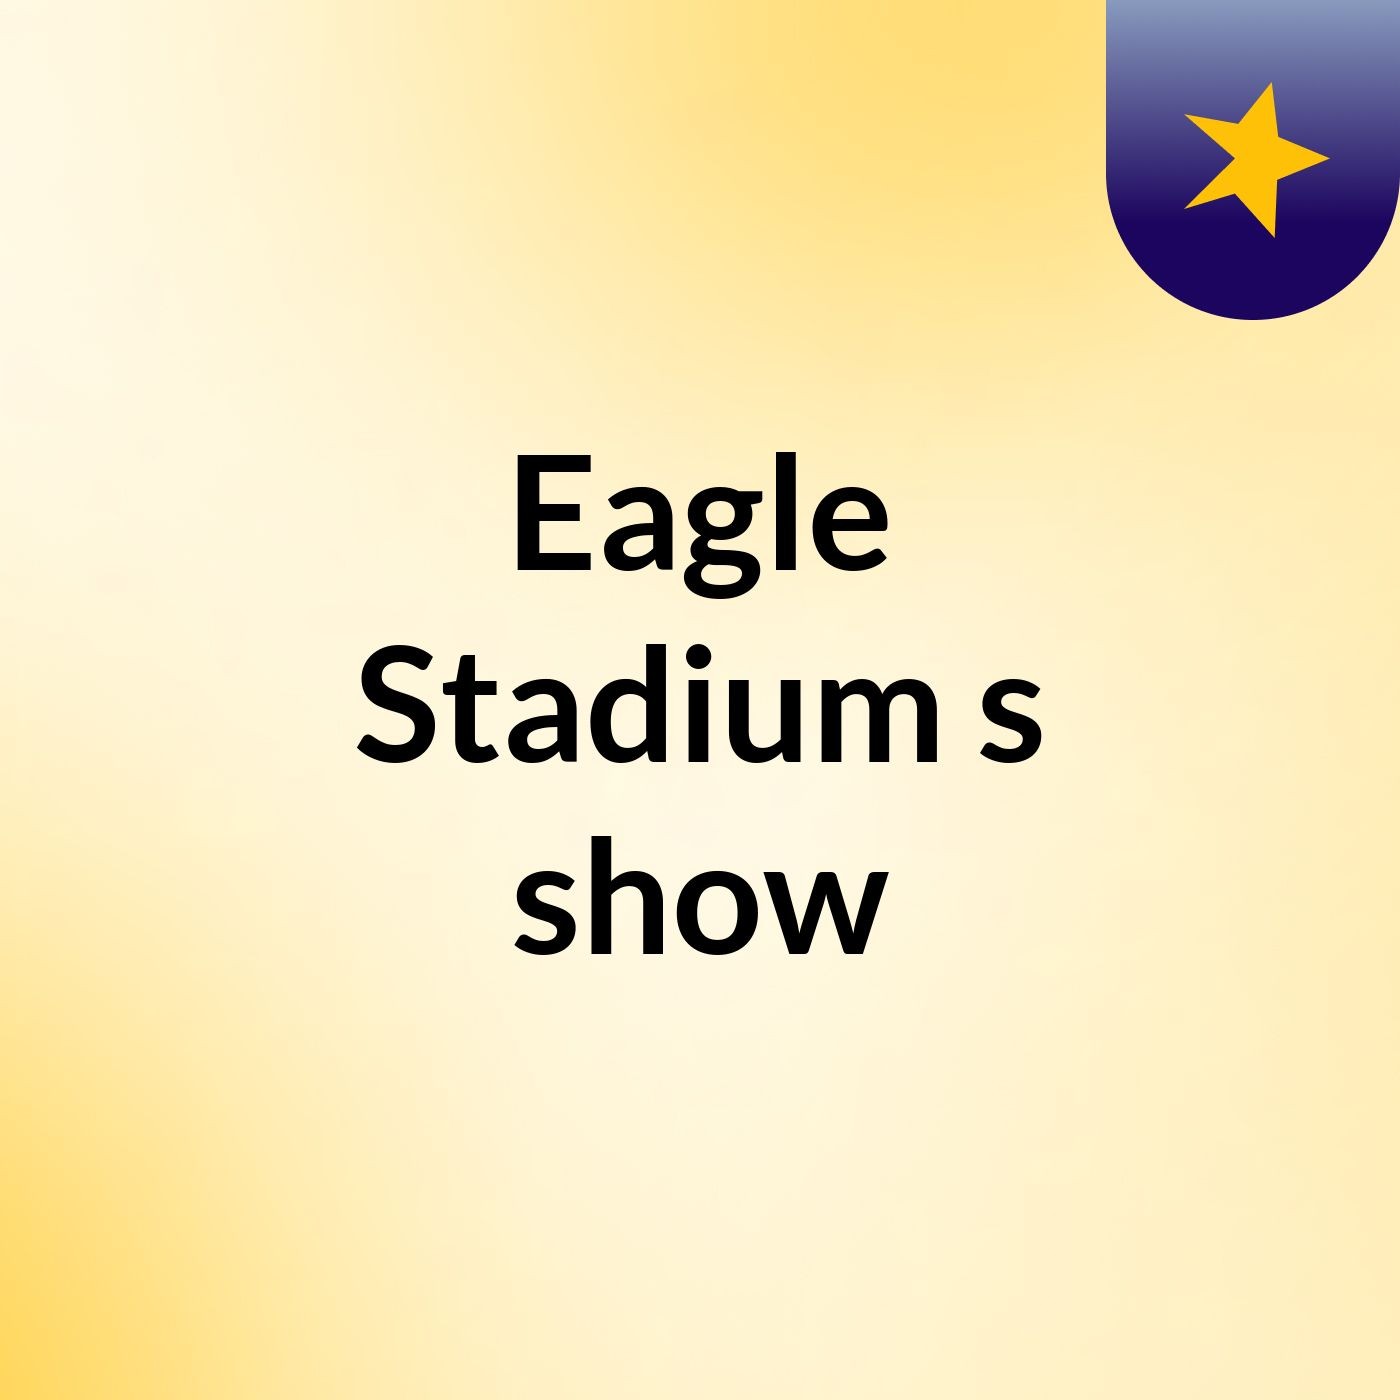 Eagle Stadium's show